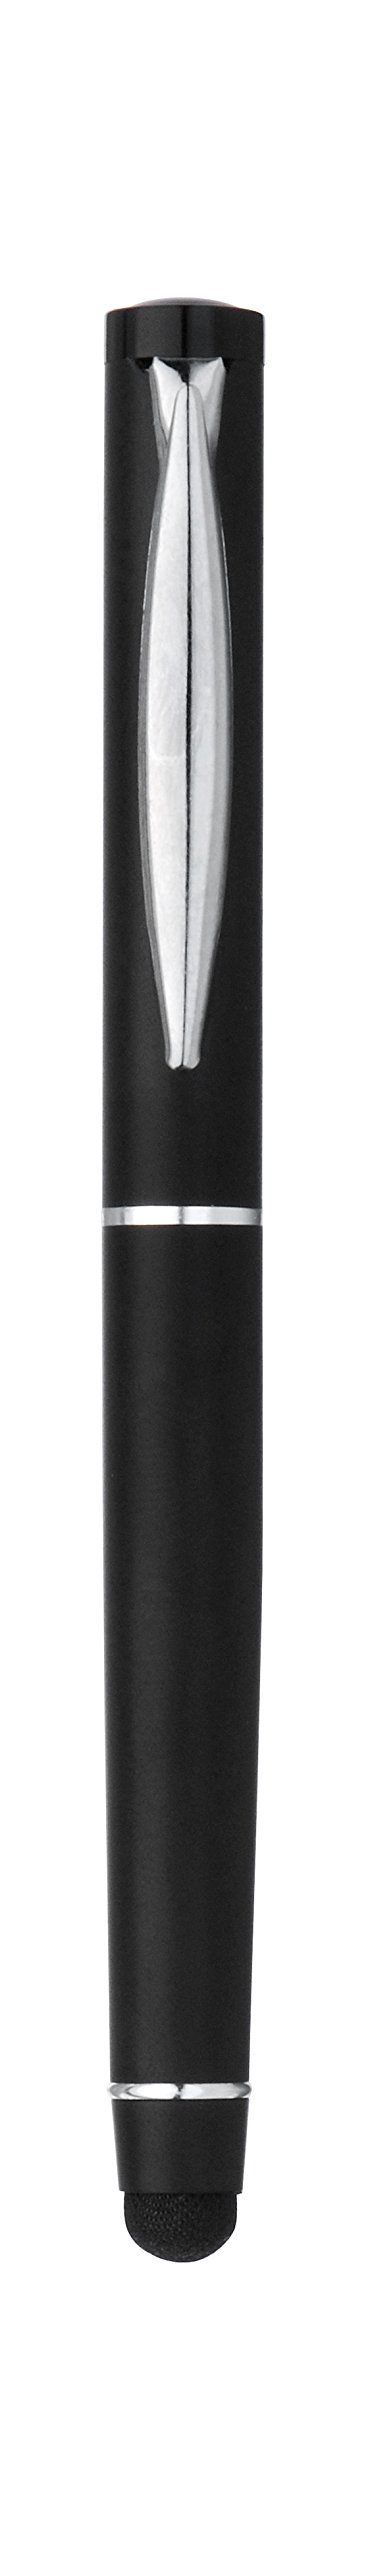 プリンストン スマートフォン用タッチペン nano ダークブラック PSA-TP5EDBK